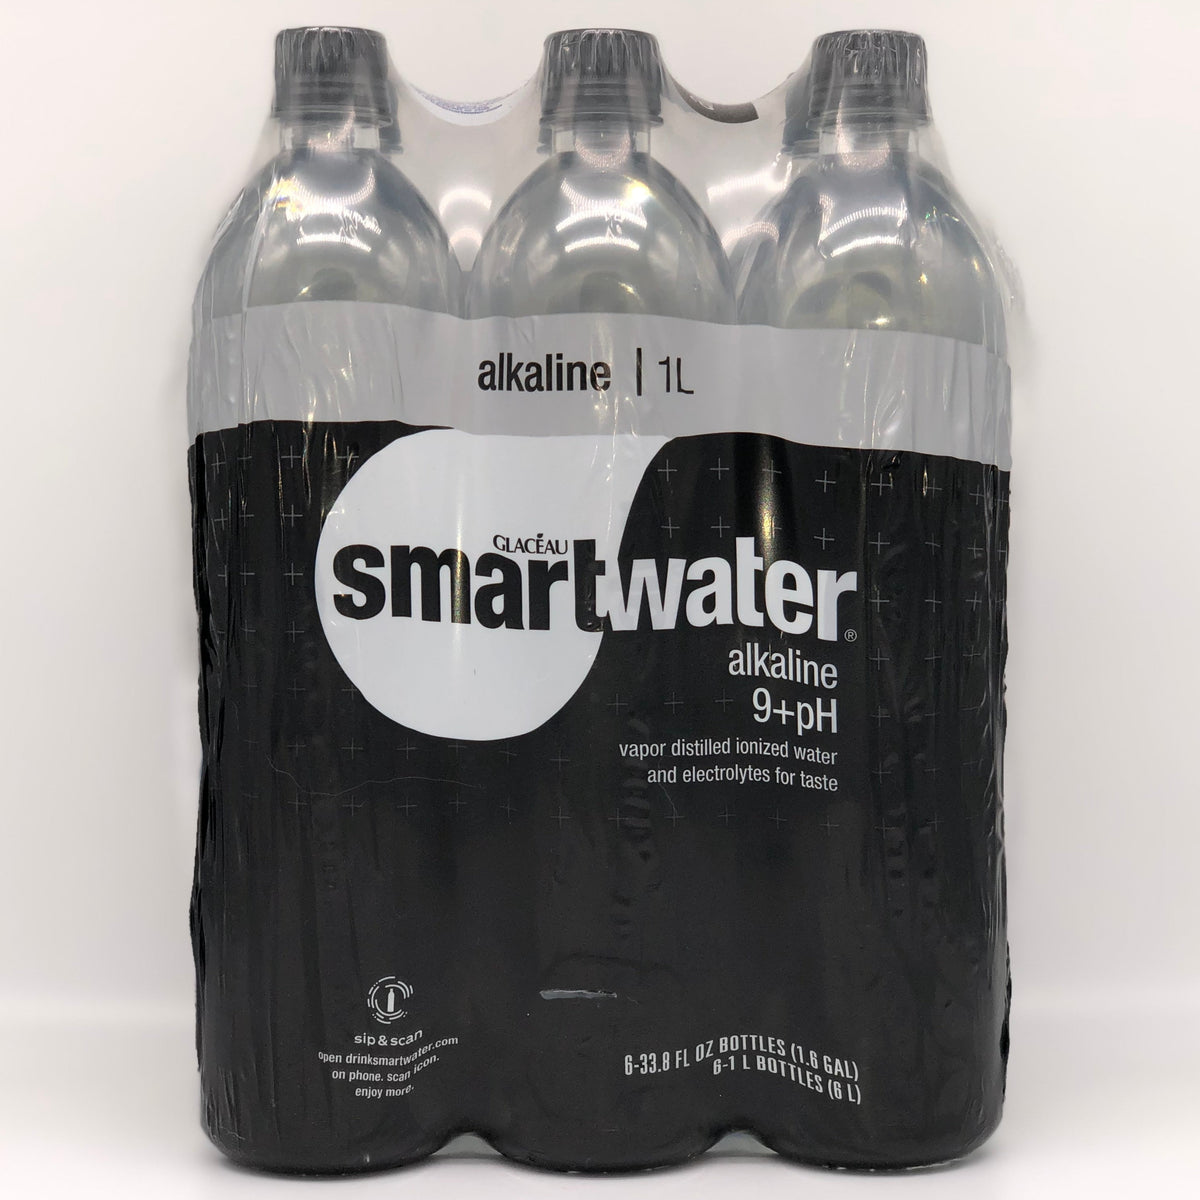 Smartwater Alkaline Vapor Distilled Ionized Water - 6pk/1l Bottles